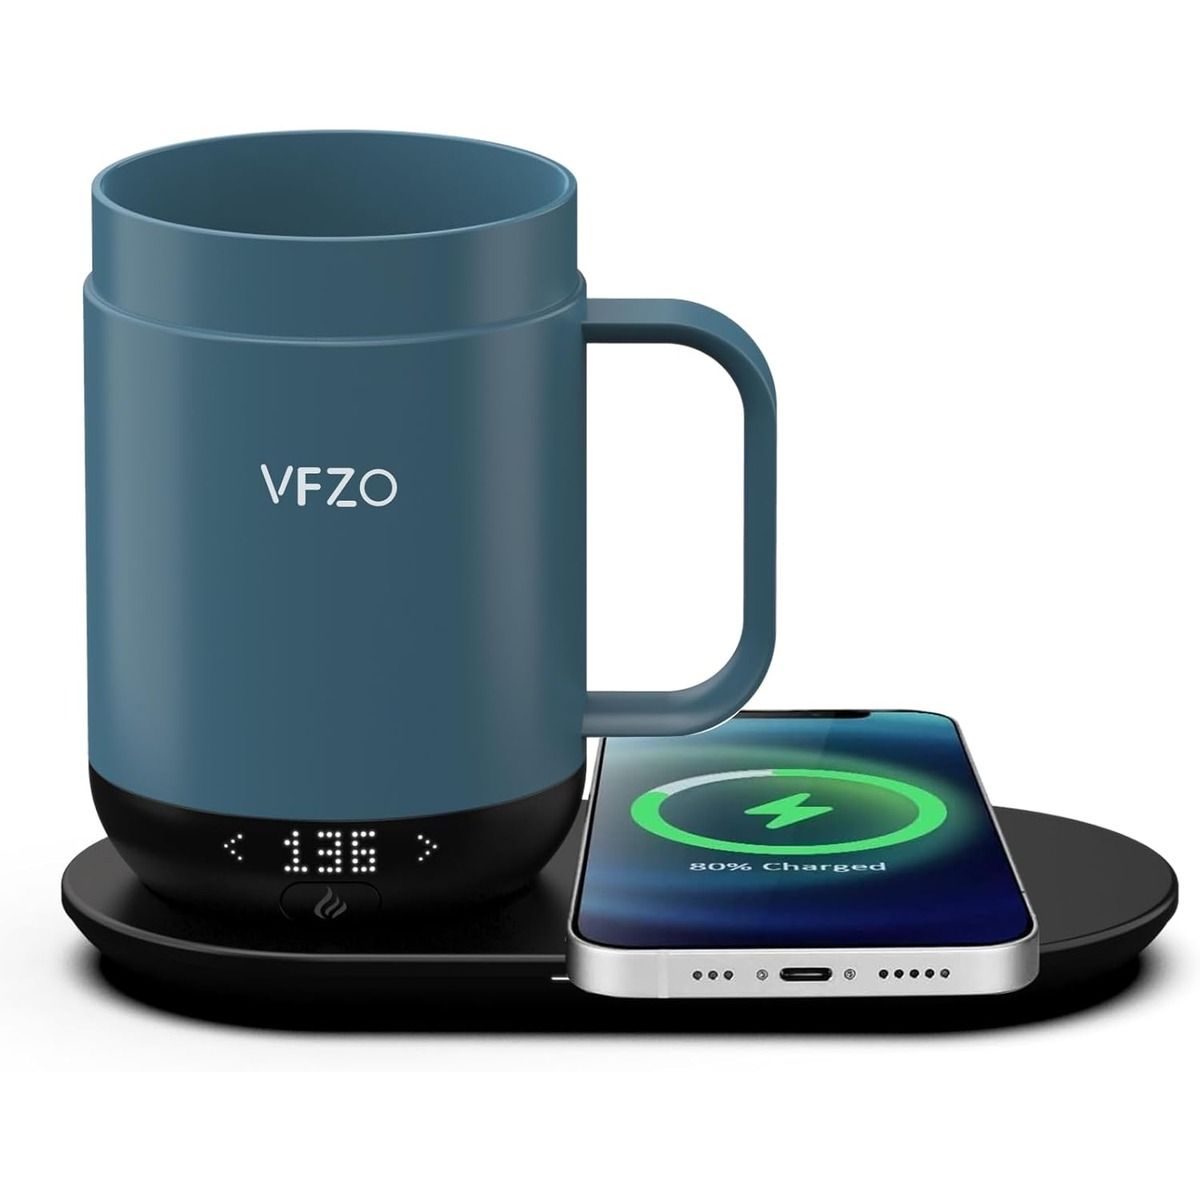 A caneca inteligente Vfzo e um smartphone contra um fundo branco